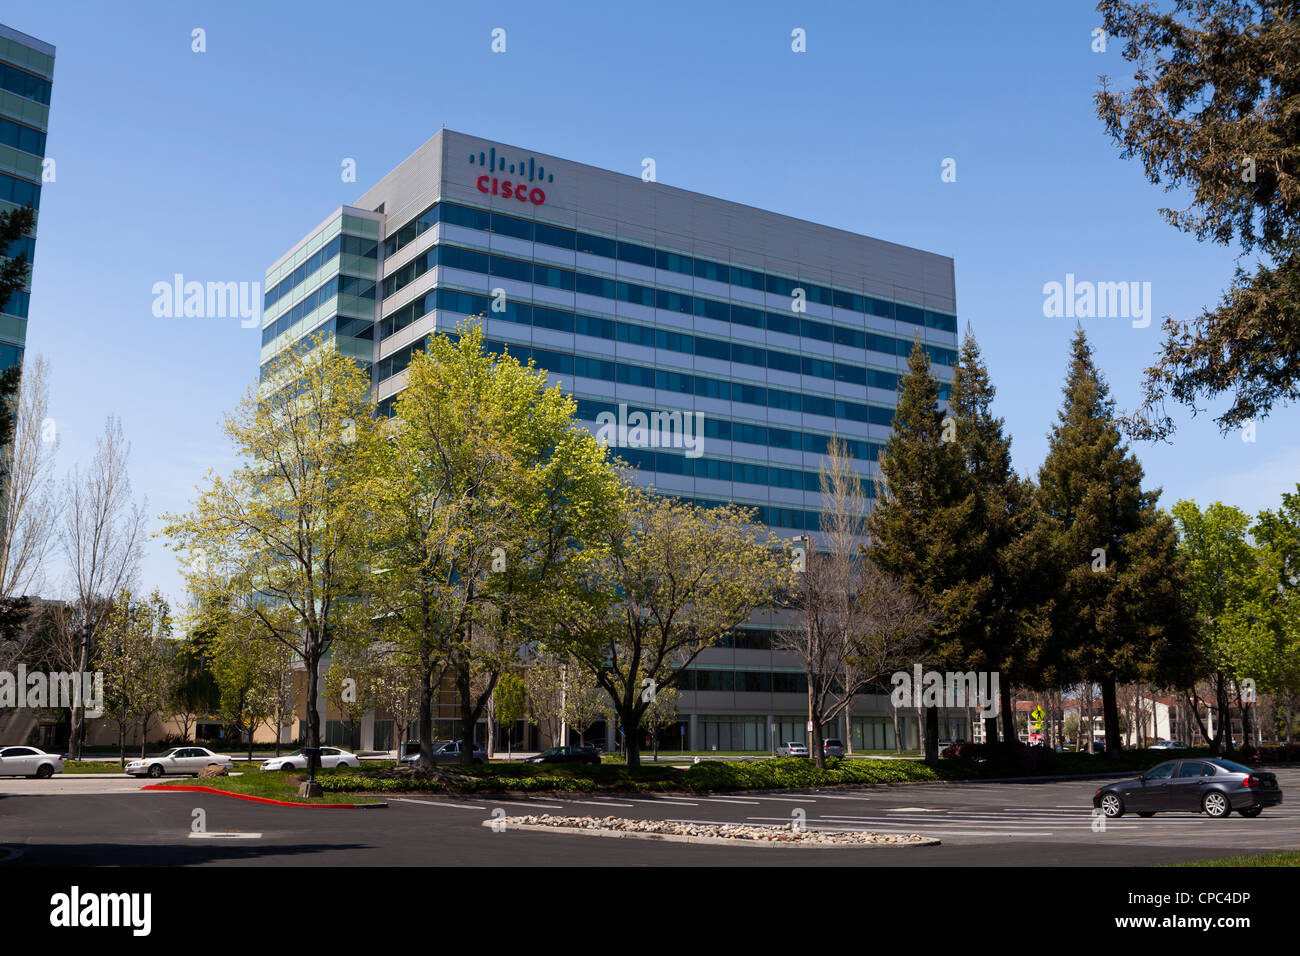 Bâtiment du siège de Cisco - San Jose, Californie Banque D'Images